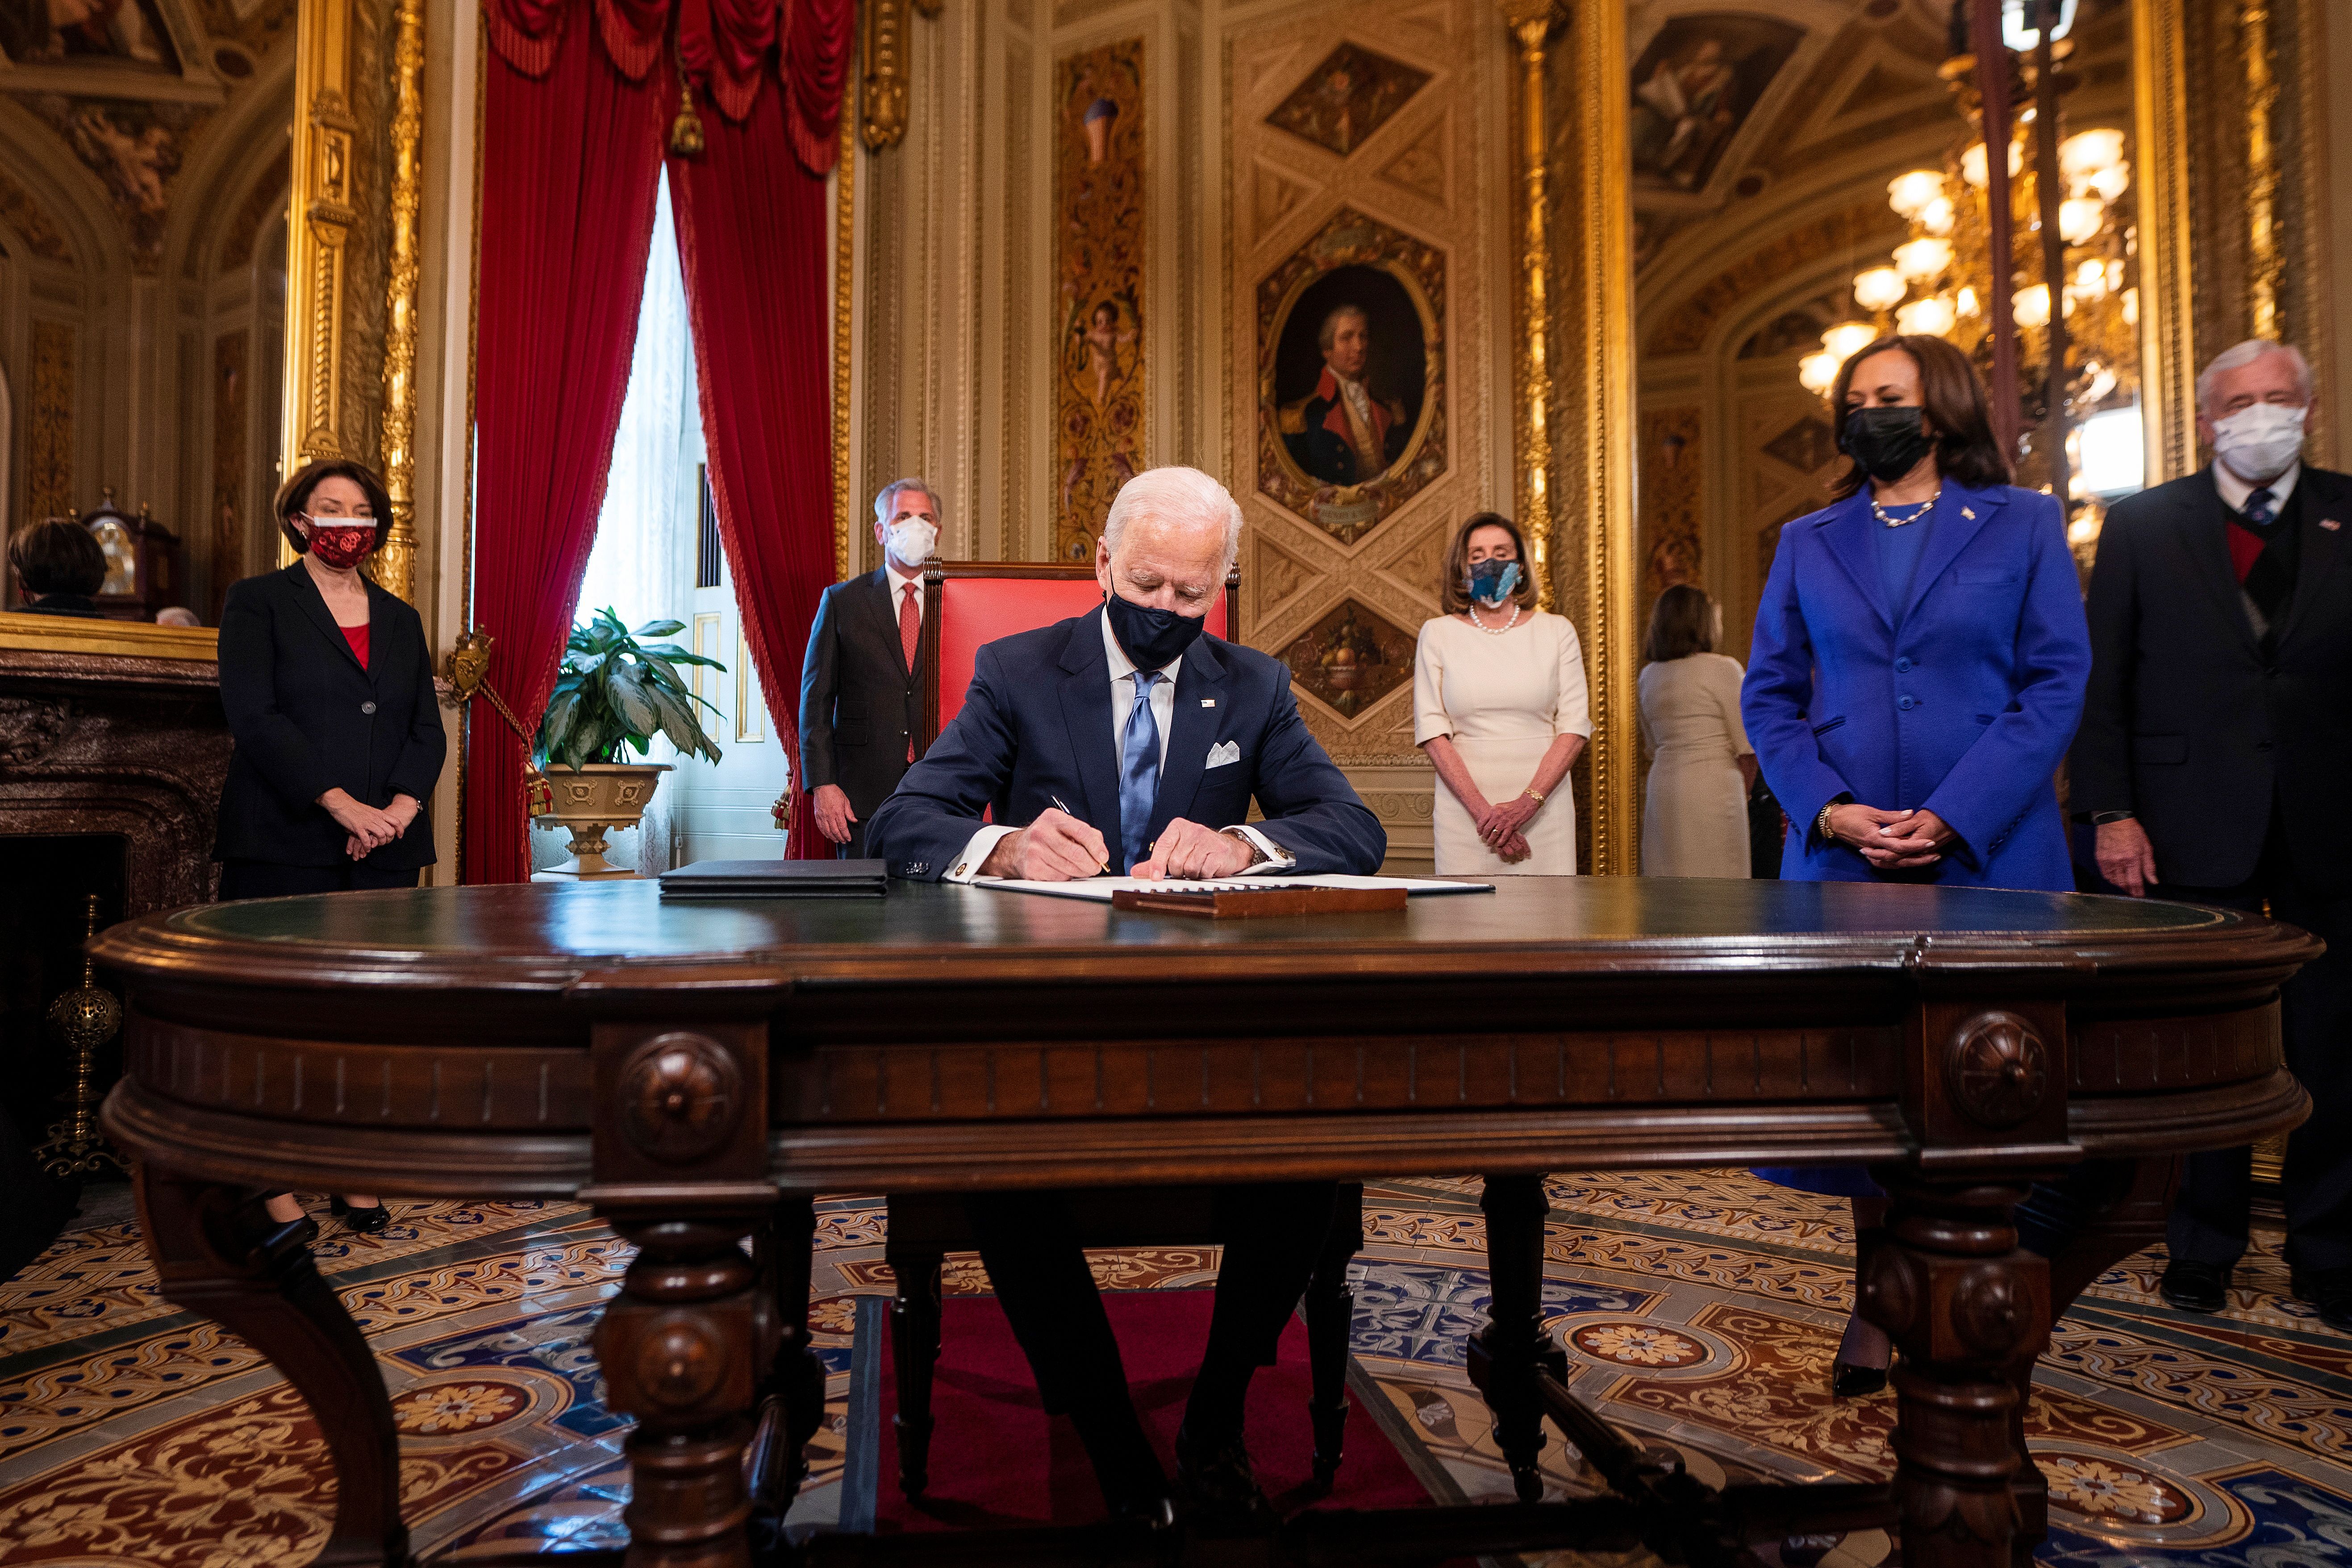 El presidente estadounidense Joe Biden firma sus primertos documentos oficiales (Jim Lo Scalzo/Pool via REUTERS)